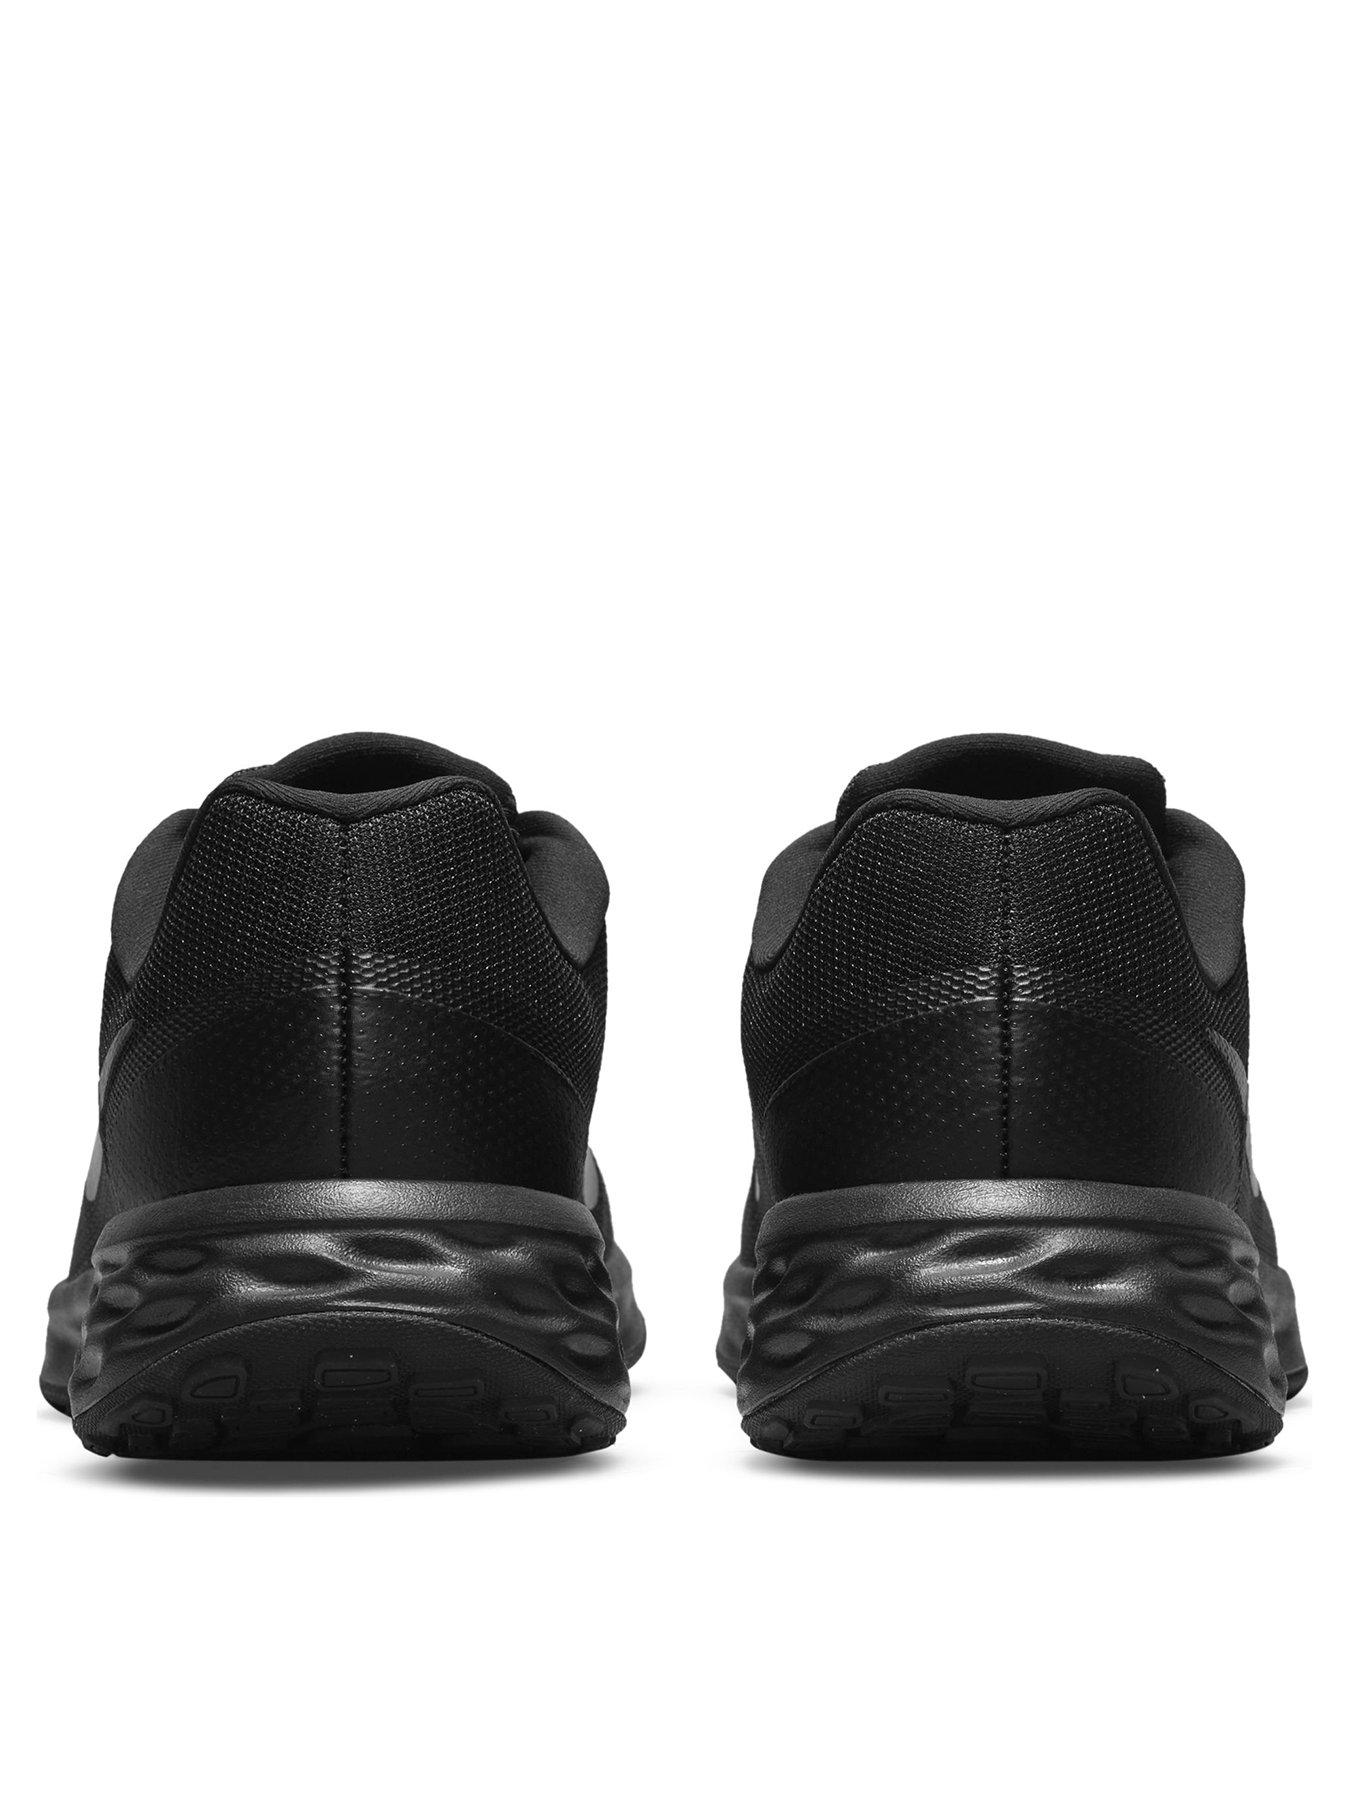 Nike Revolution 6 - Black/Anthracite | littlewoods.com